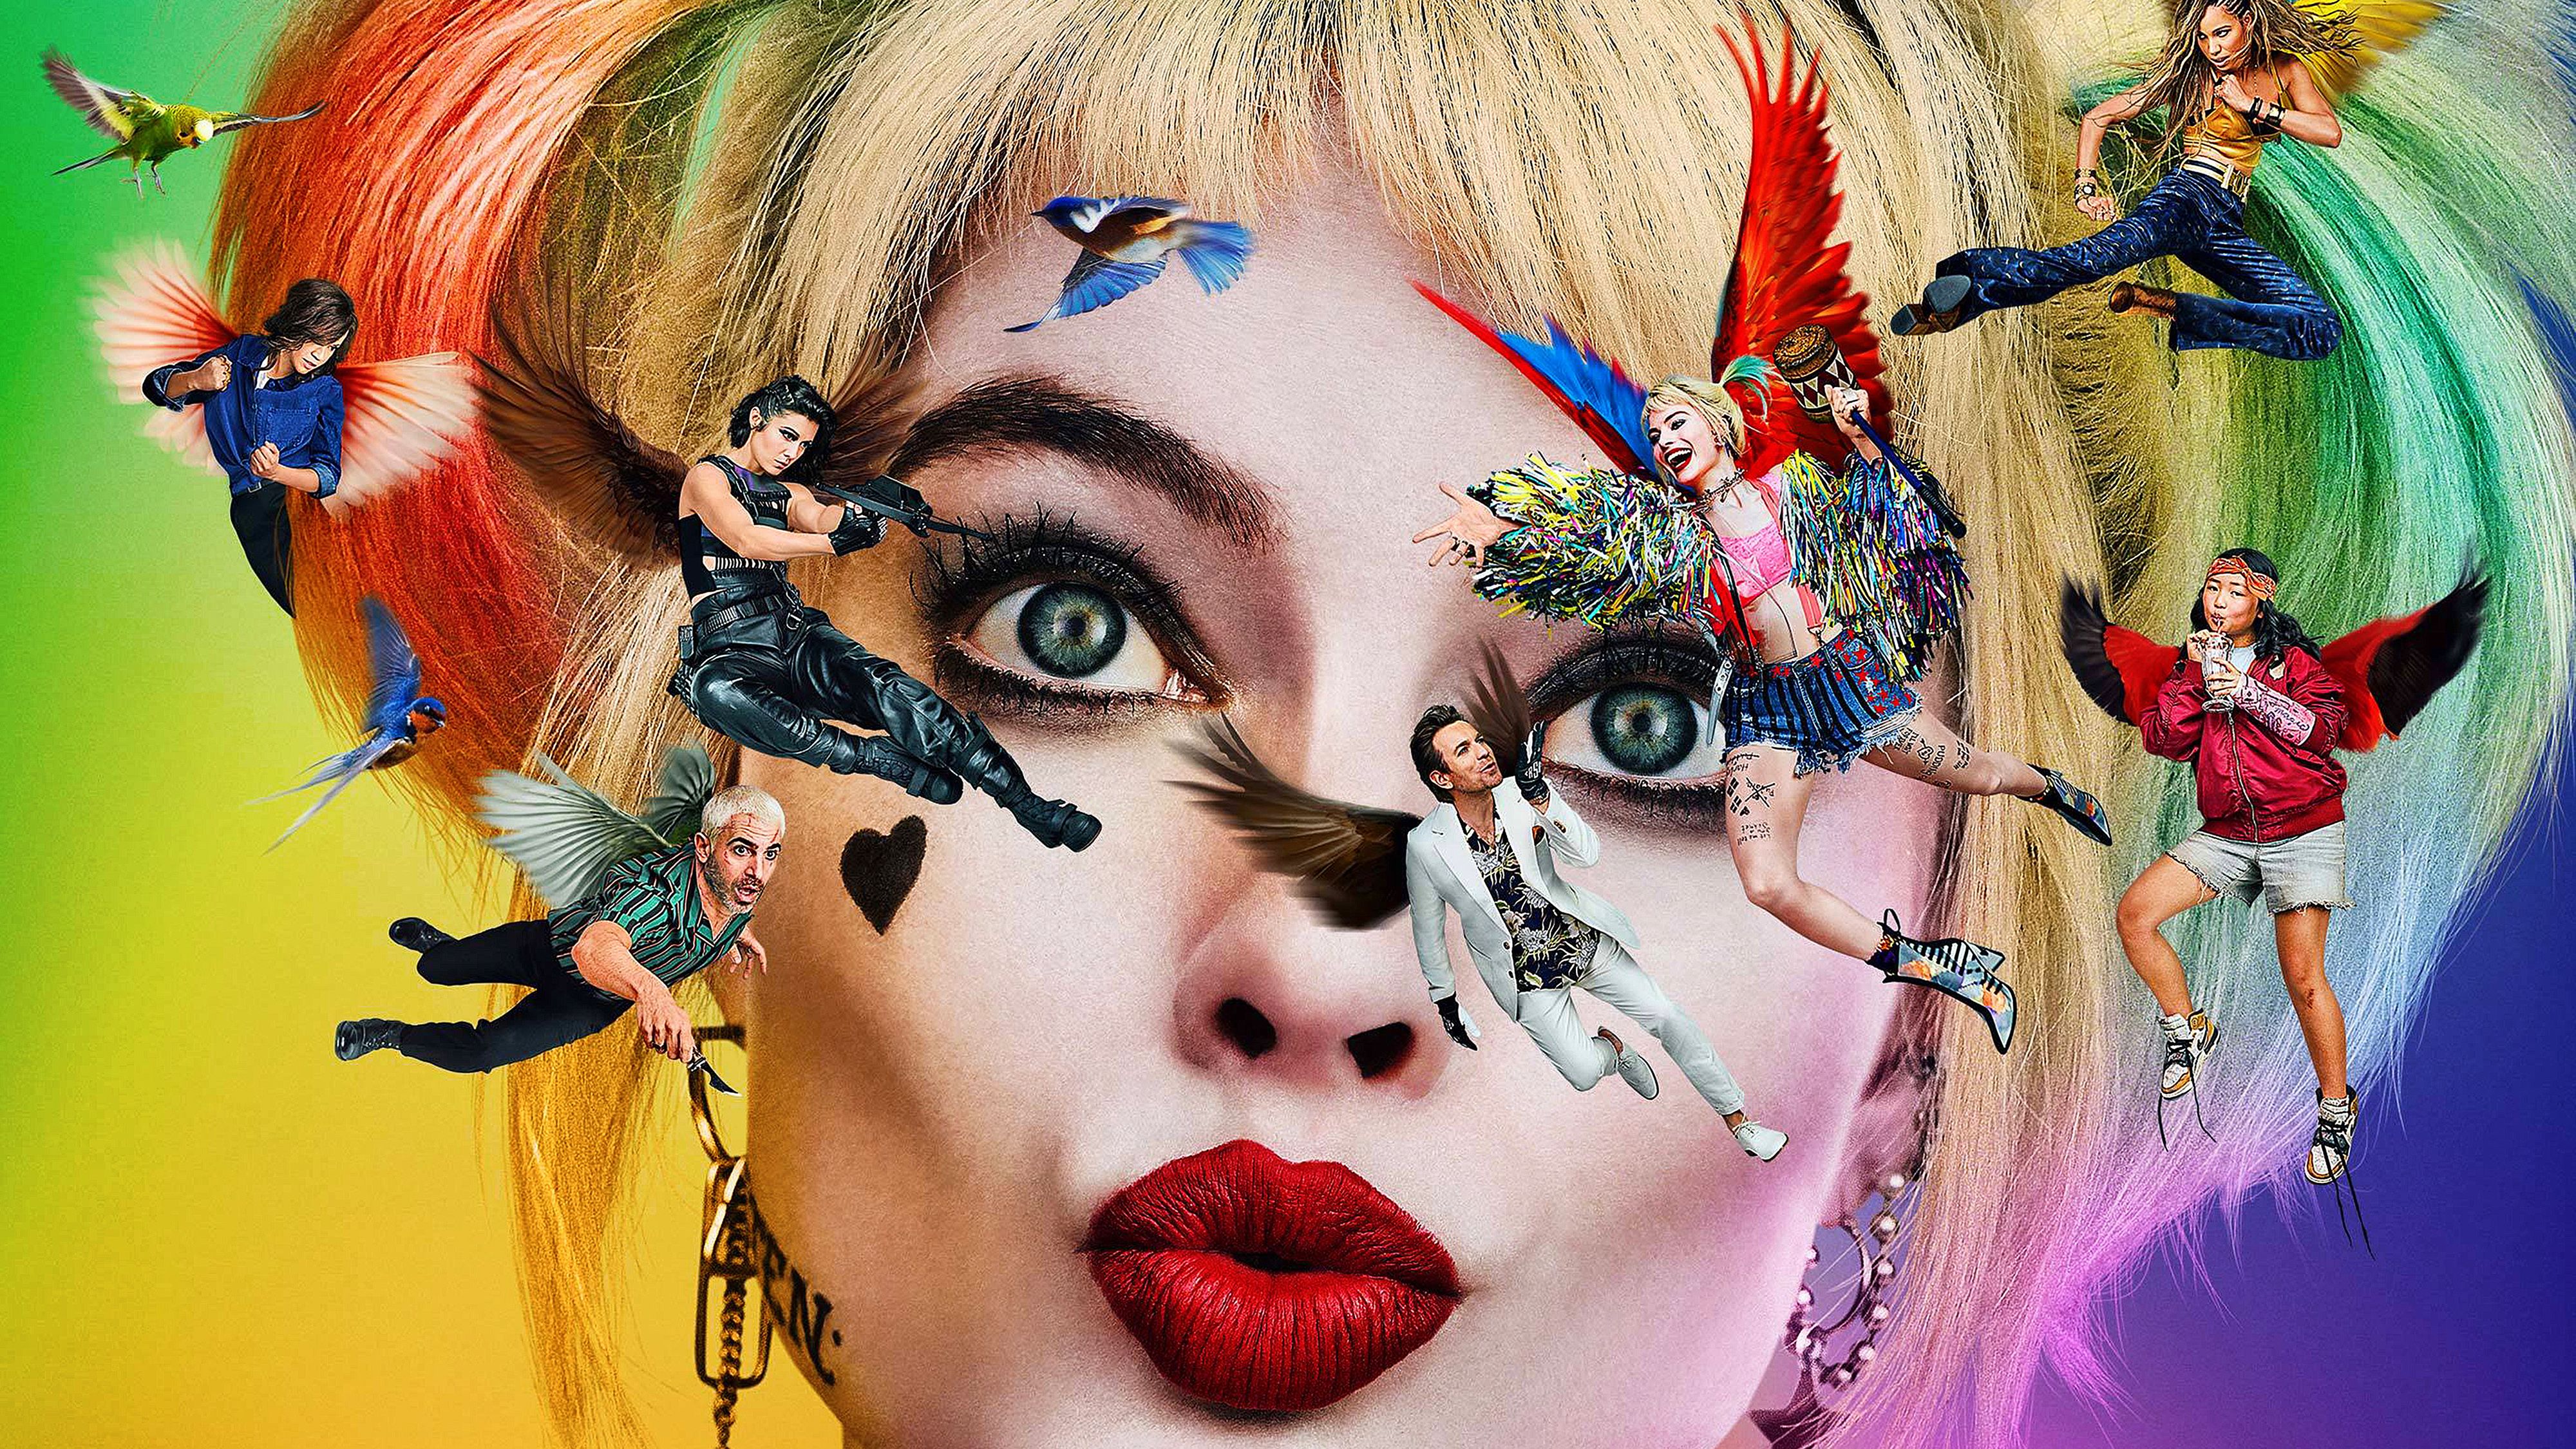 Harley Quinn in Birds of Prey 2019 4K Wallpaper